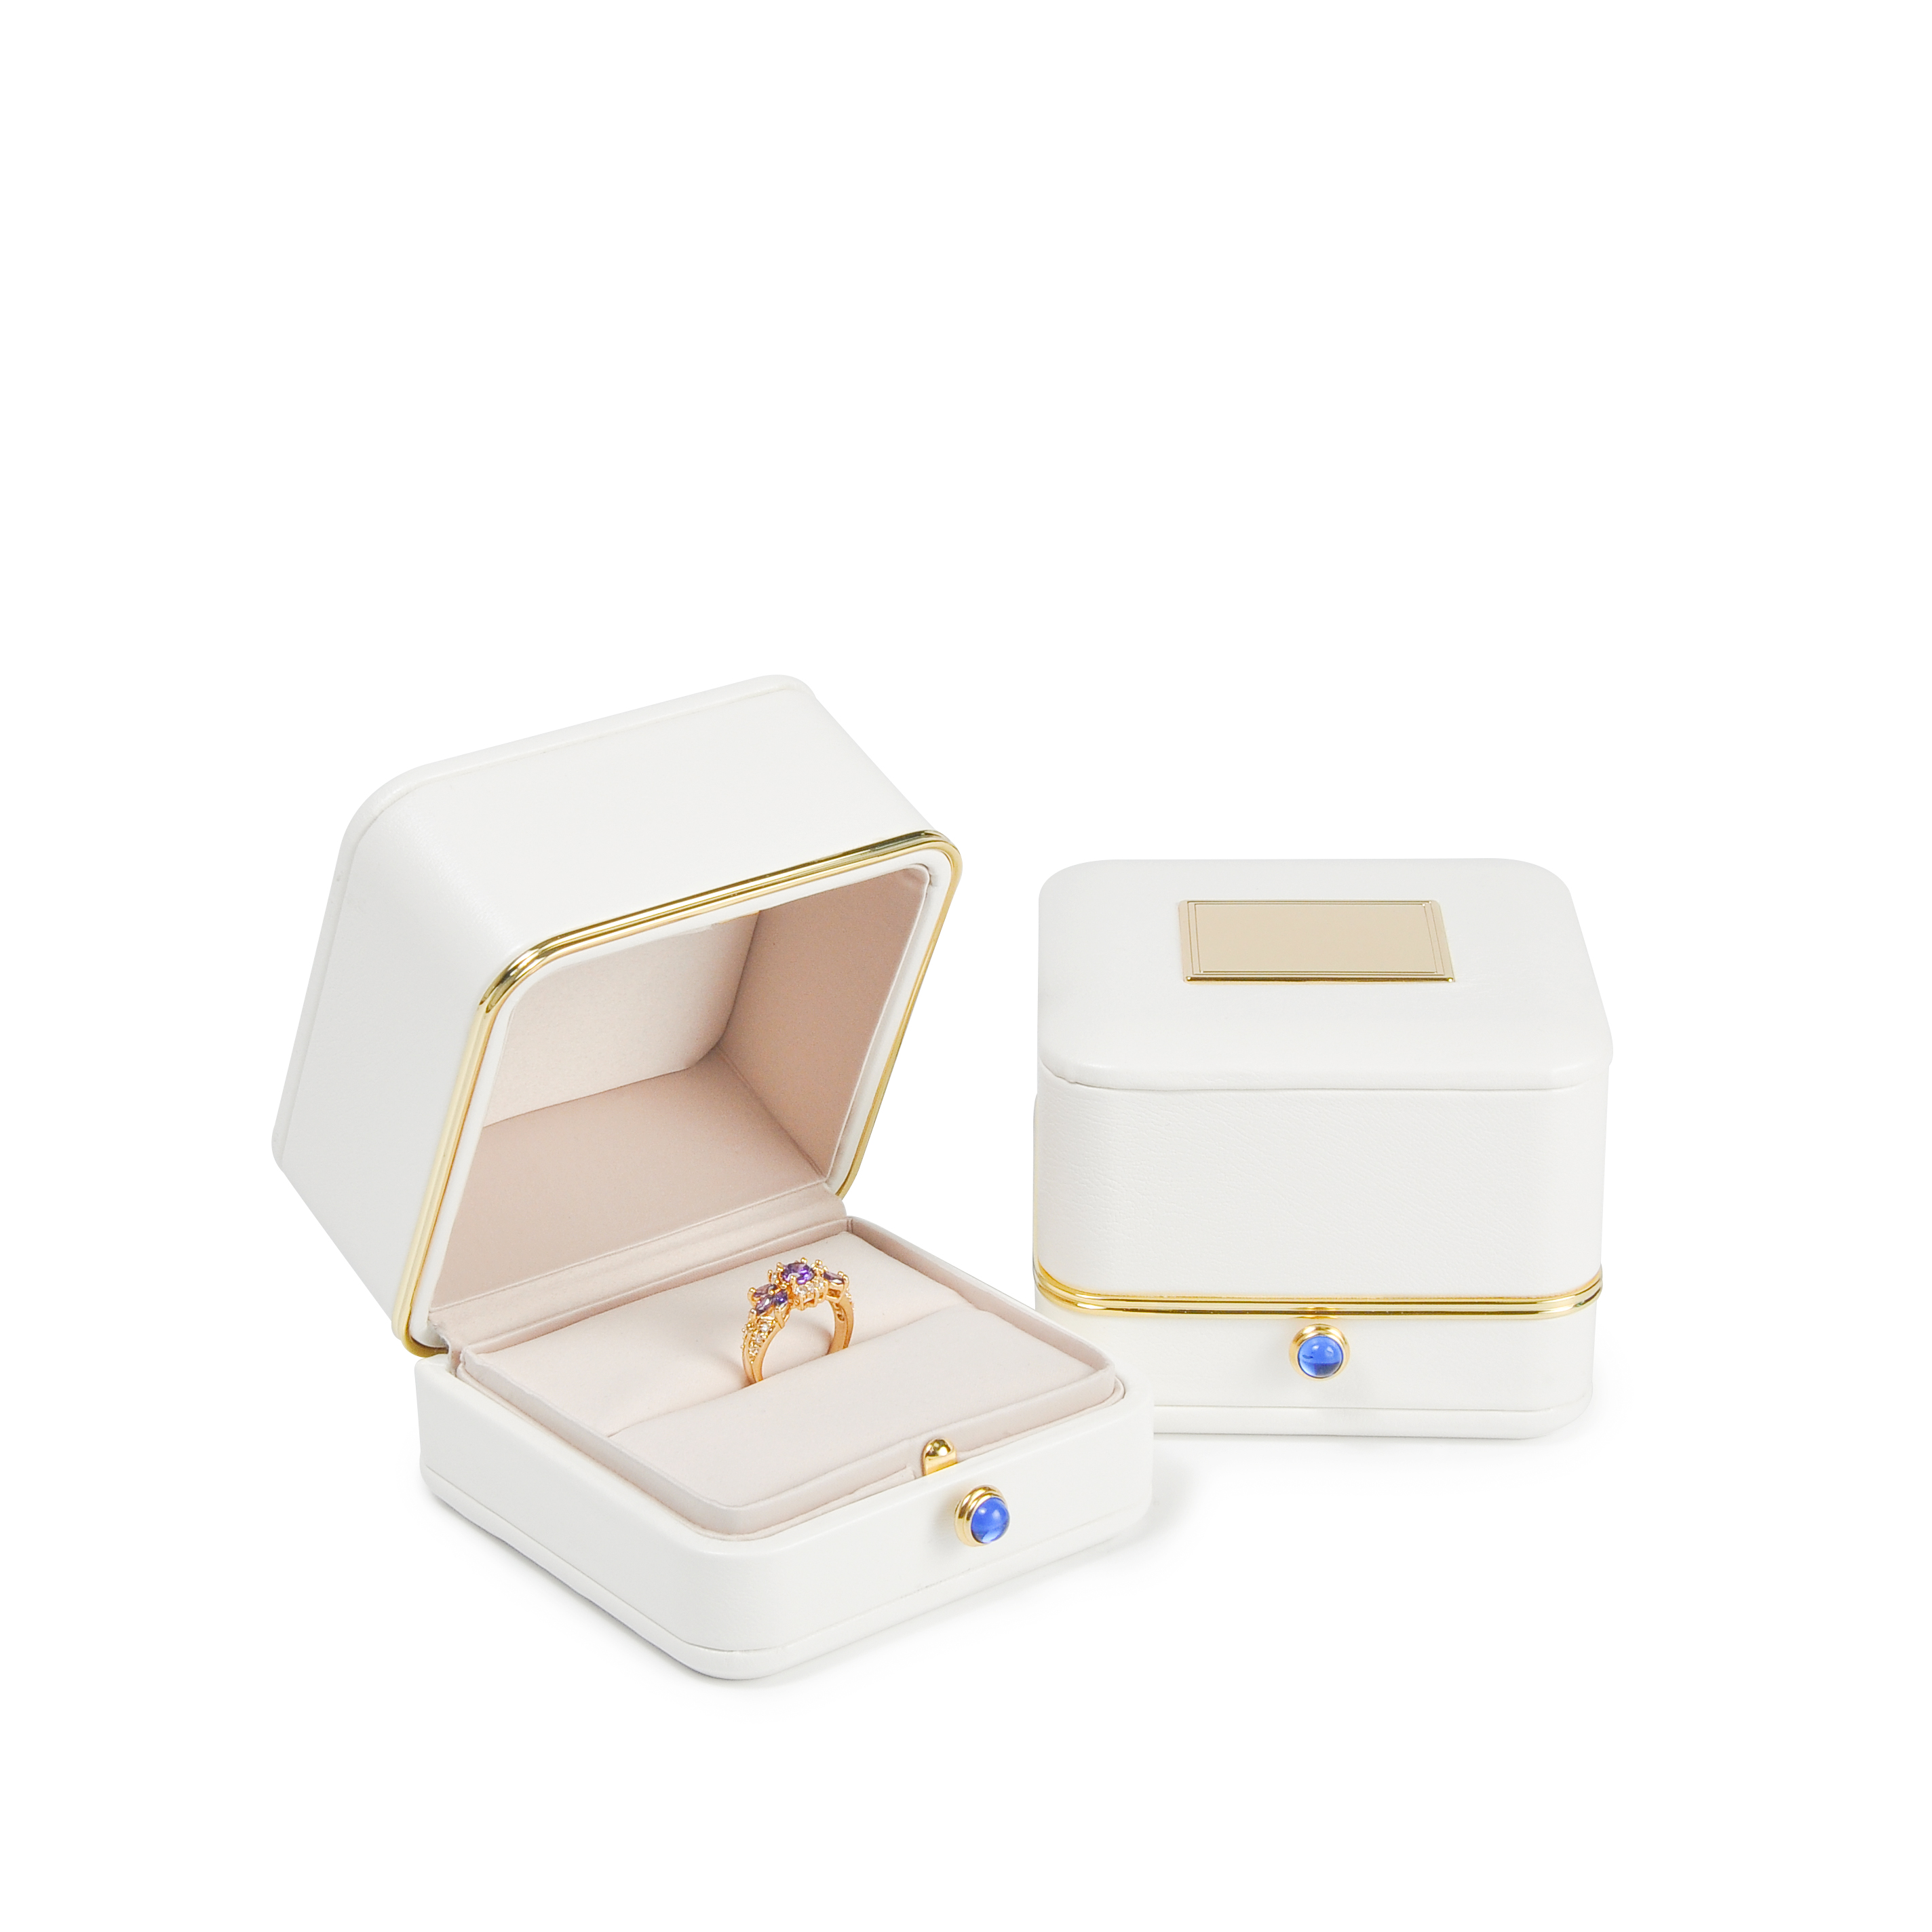 Μόδα λευκό πλαστικό κουτί χρυσό άκρο χαρακτηριστικό κουμπί δαχτυλίδι κοσμήματα κουτί κουτί δαχτυλίδι κουτί